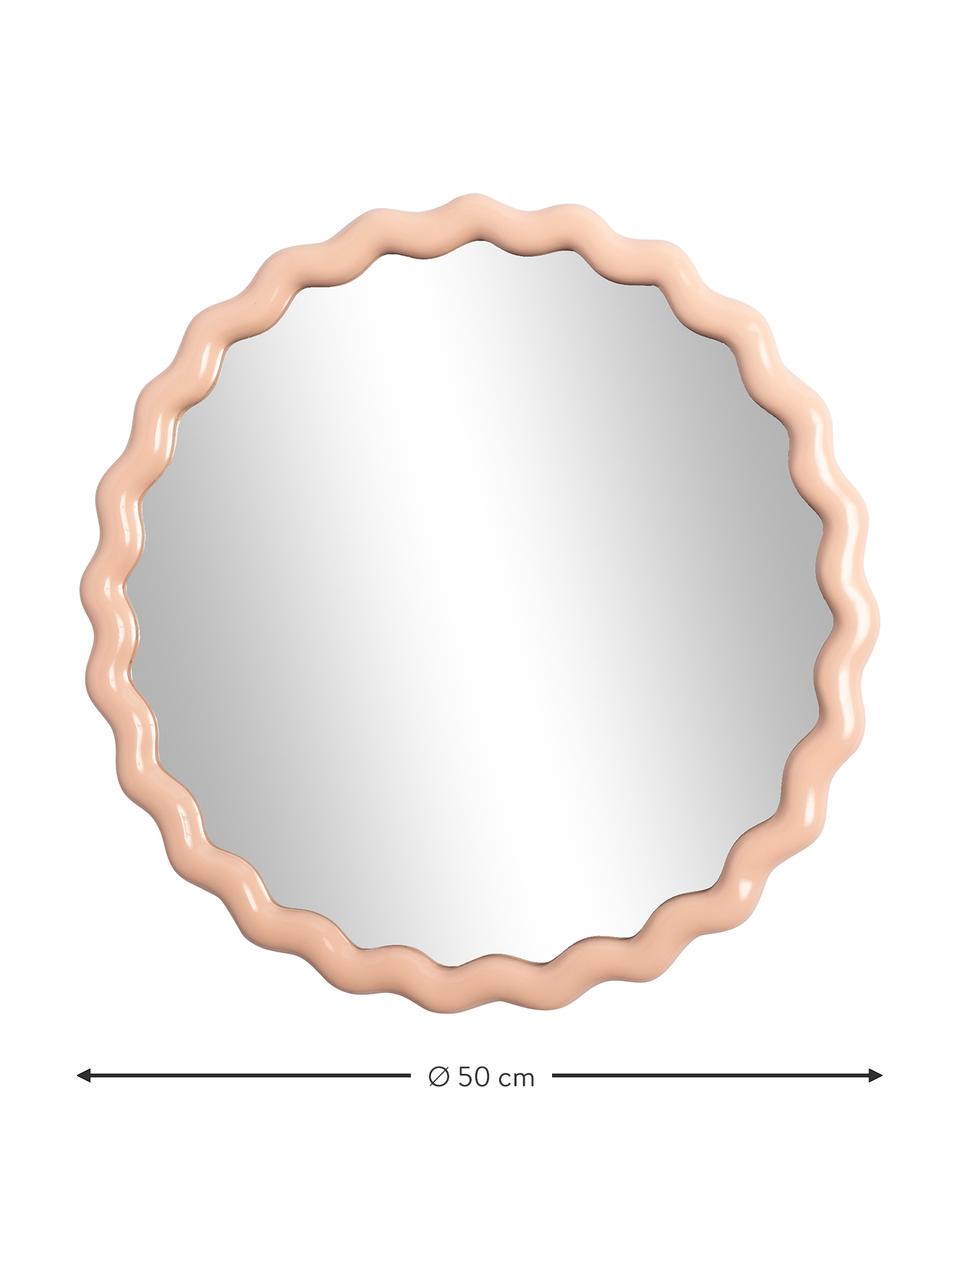 Runder Wandspiegel Zigzag in Beige, Rahmen: Polyresin, Spiegelfläche: Spiegelglas, Pastell-Beige, Ø 50 cm